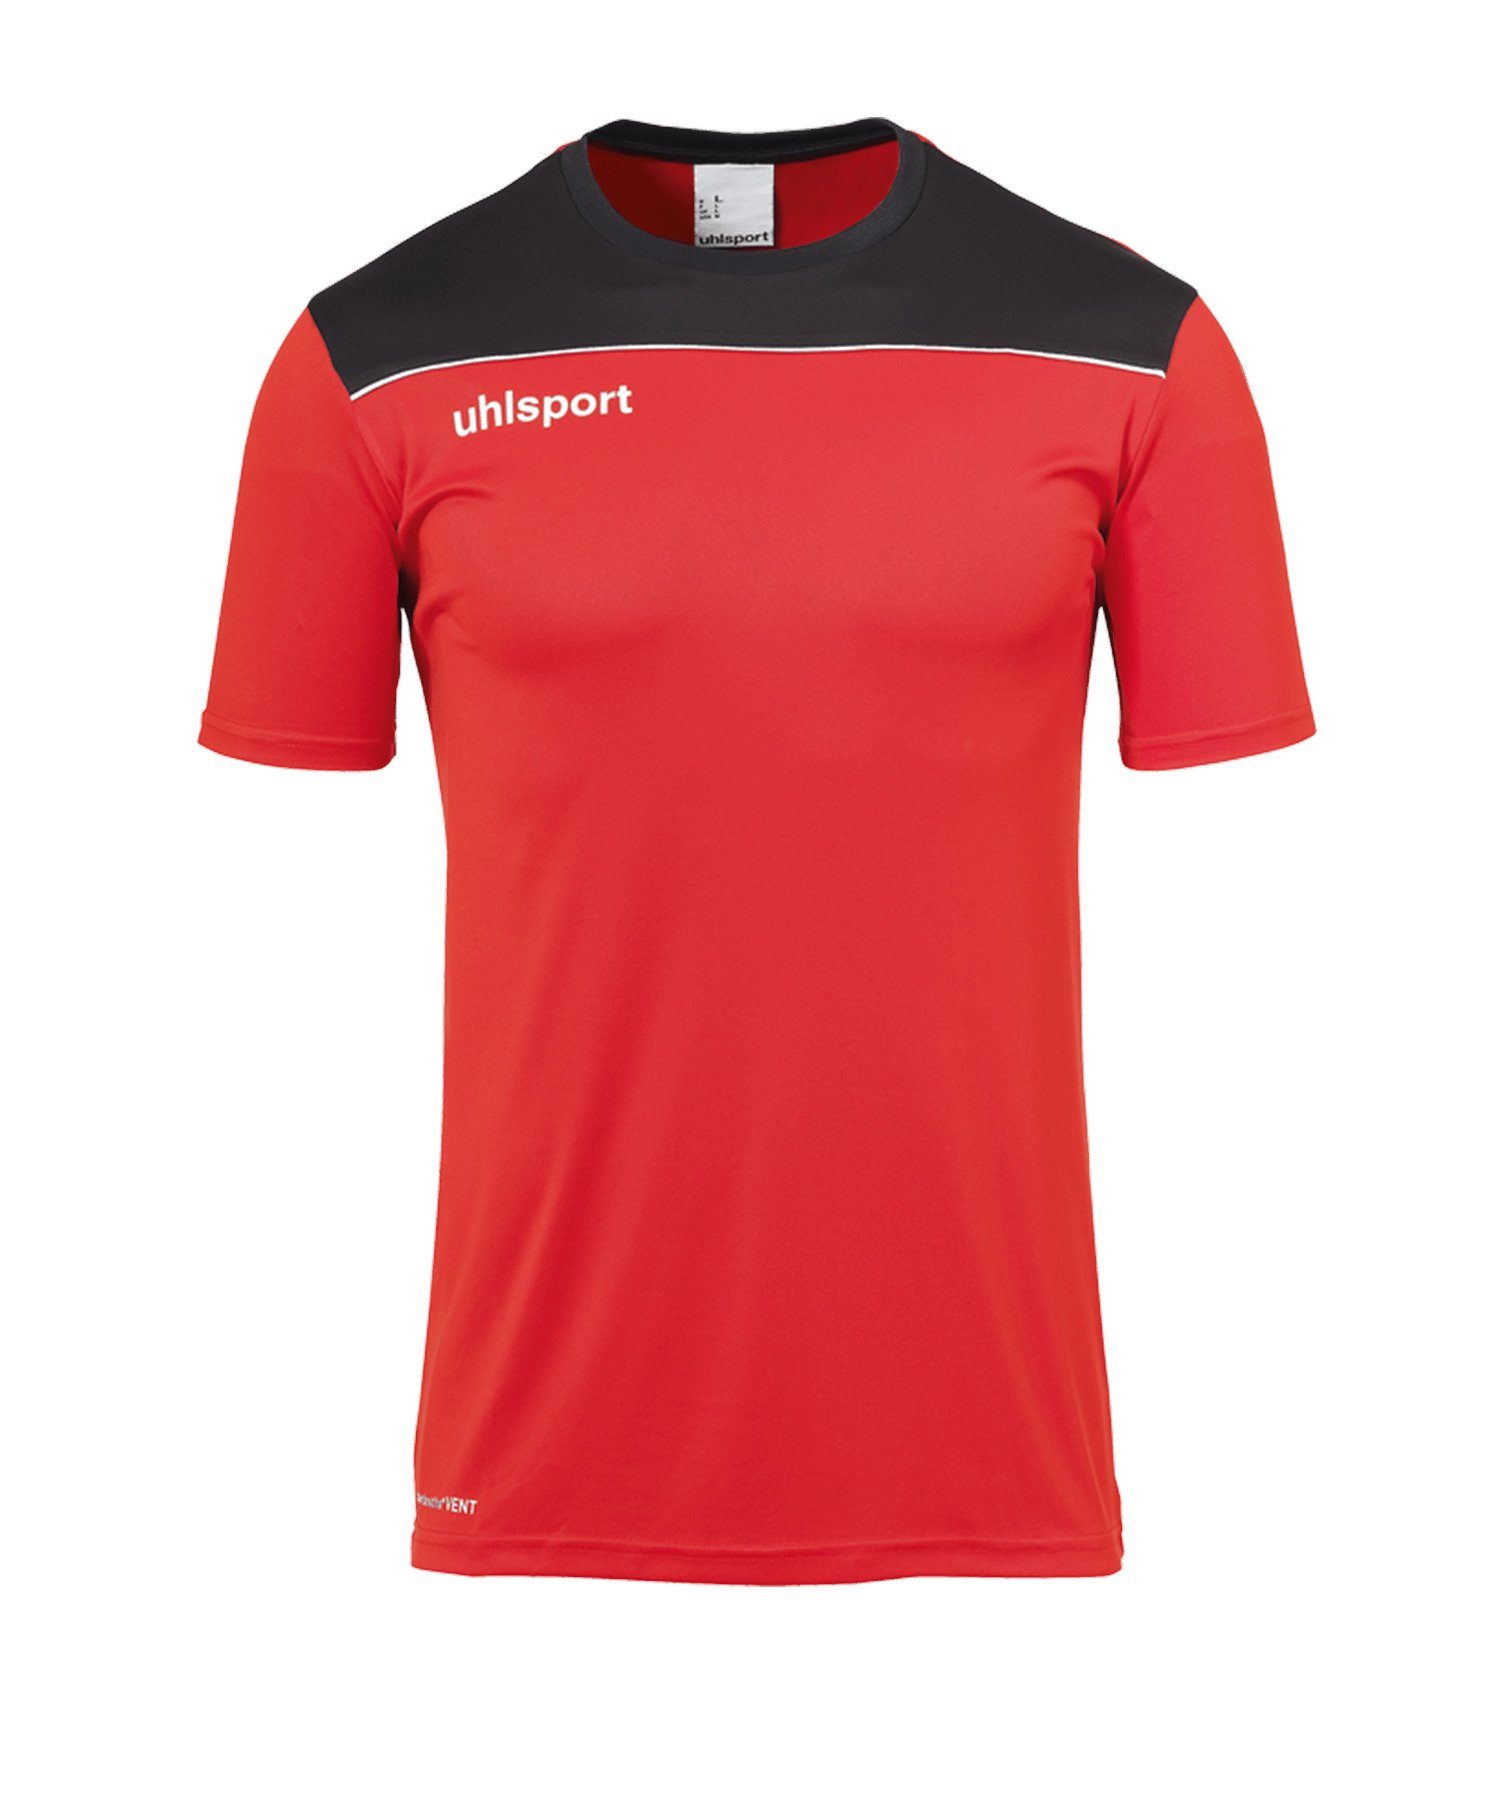 rotschwarz default T-Shirt Trainingsshirt 23 uhlsport Offense